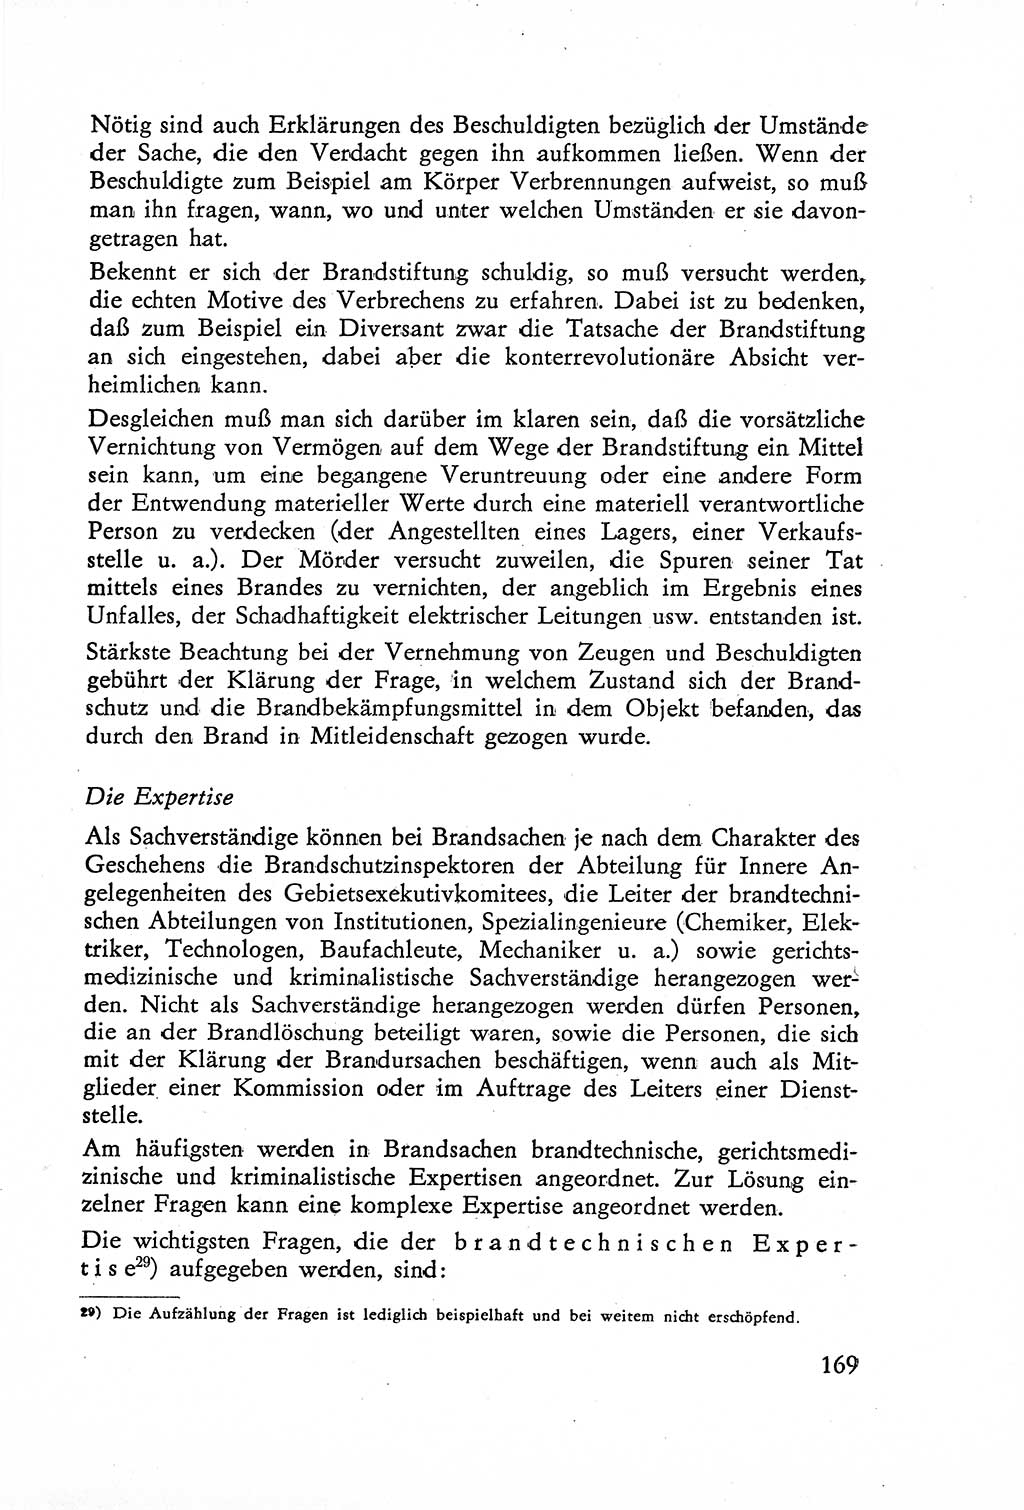 Die Untersuchung einzelner Verbrechensarten [Deutsche Demokratische Republik (DDR)] 1960, Seite 169 (Unters. Verbr.-Art. DDR 1960, S. 169)